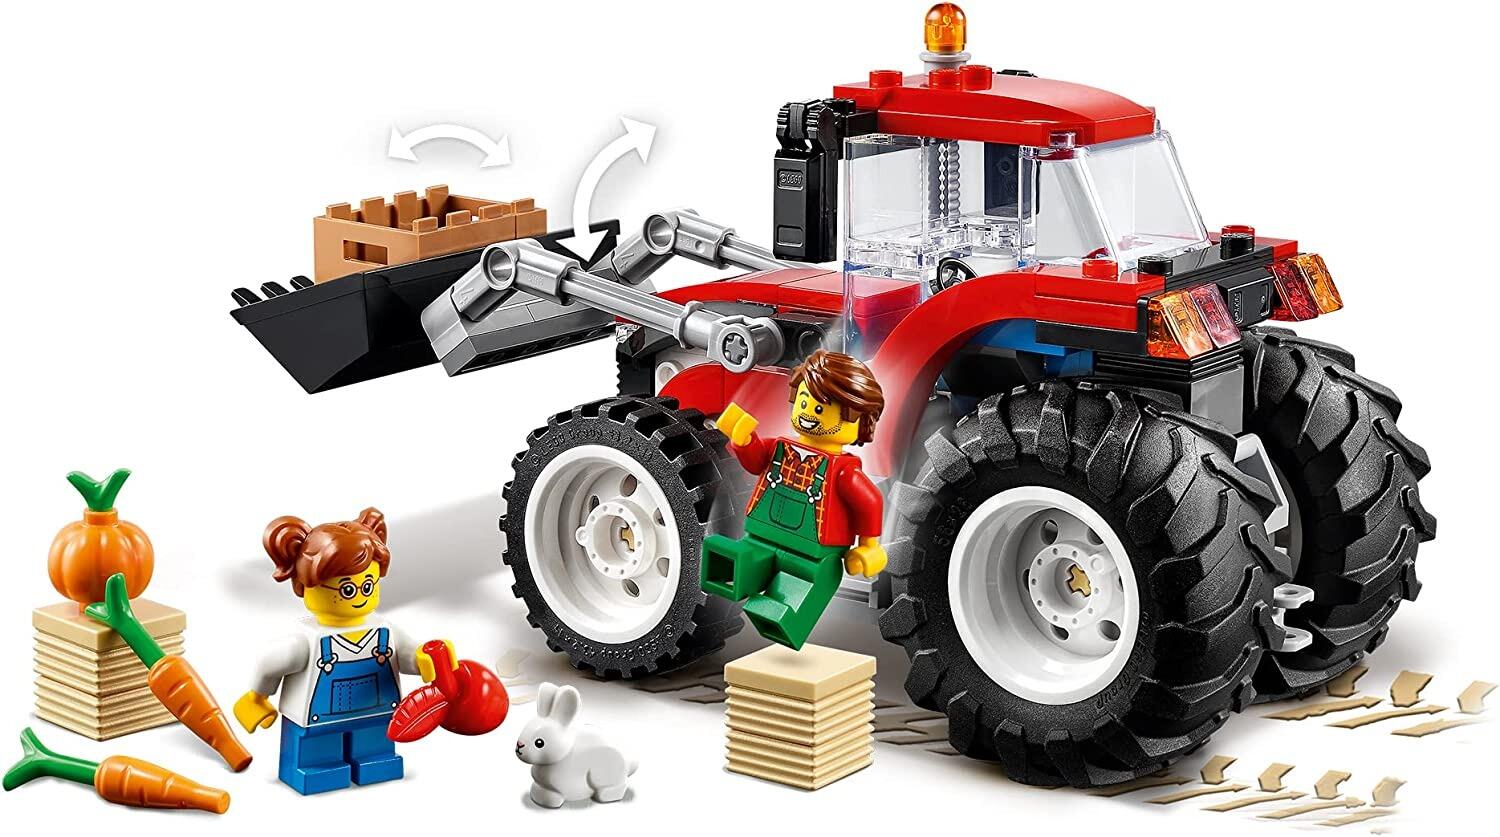 Lego City 60287 Tractor